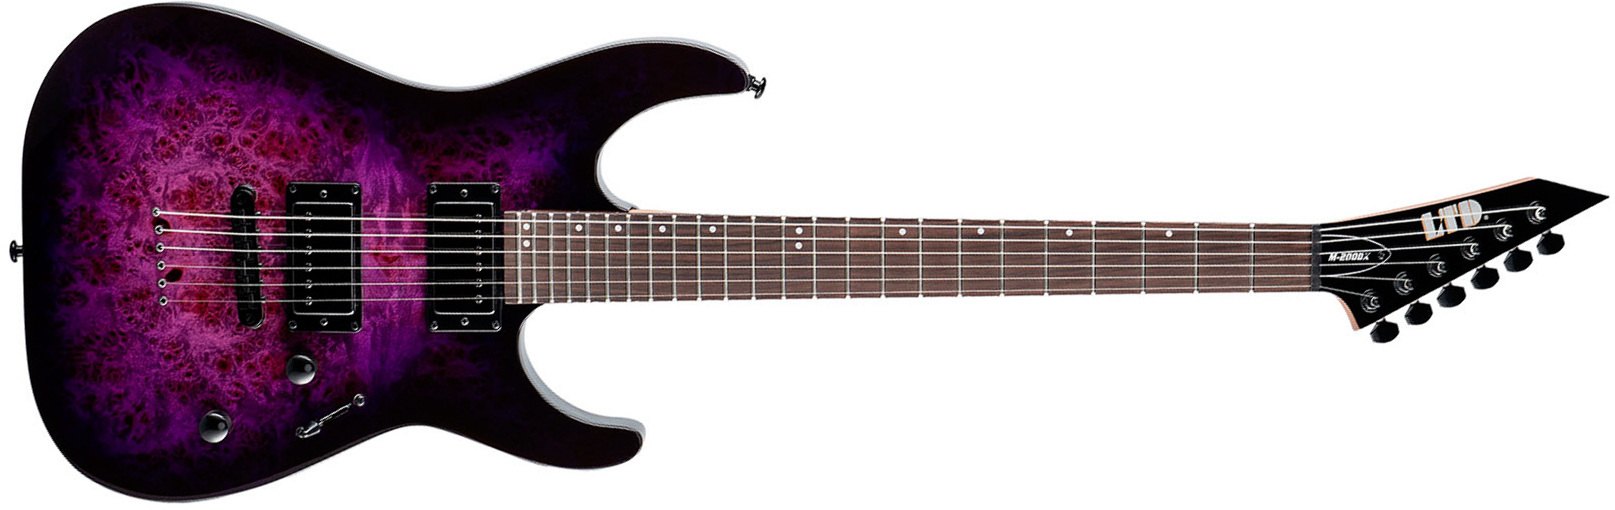 Ltd M200dx 2h Ht Rw - Purple Burst - Guitare Électrique Forme Str - Main picture